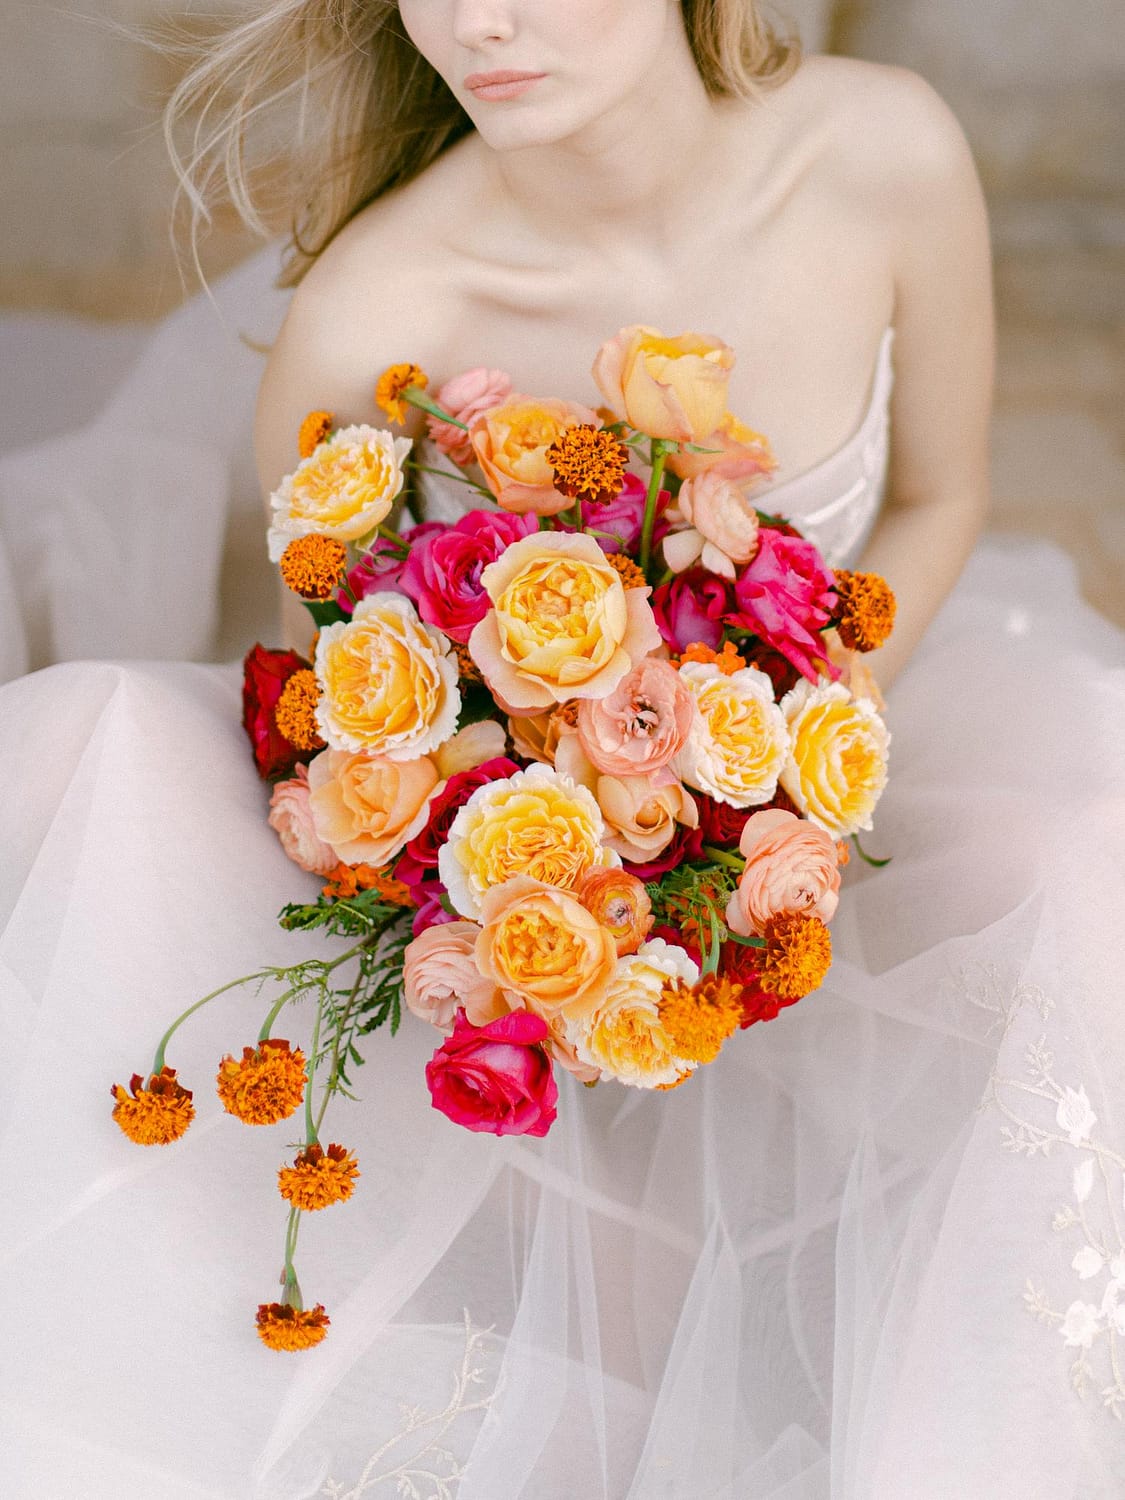 زهور الزفاف الزاهية لباقة الزفاف